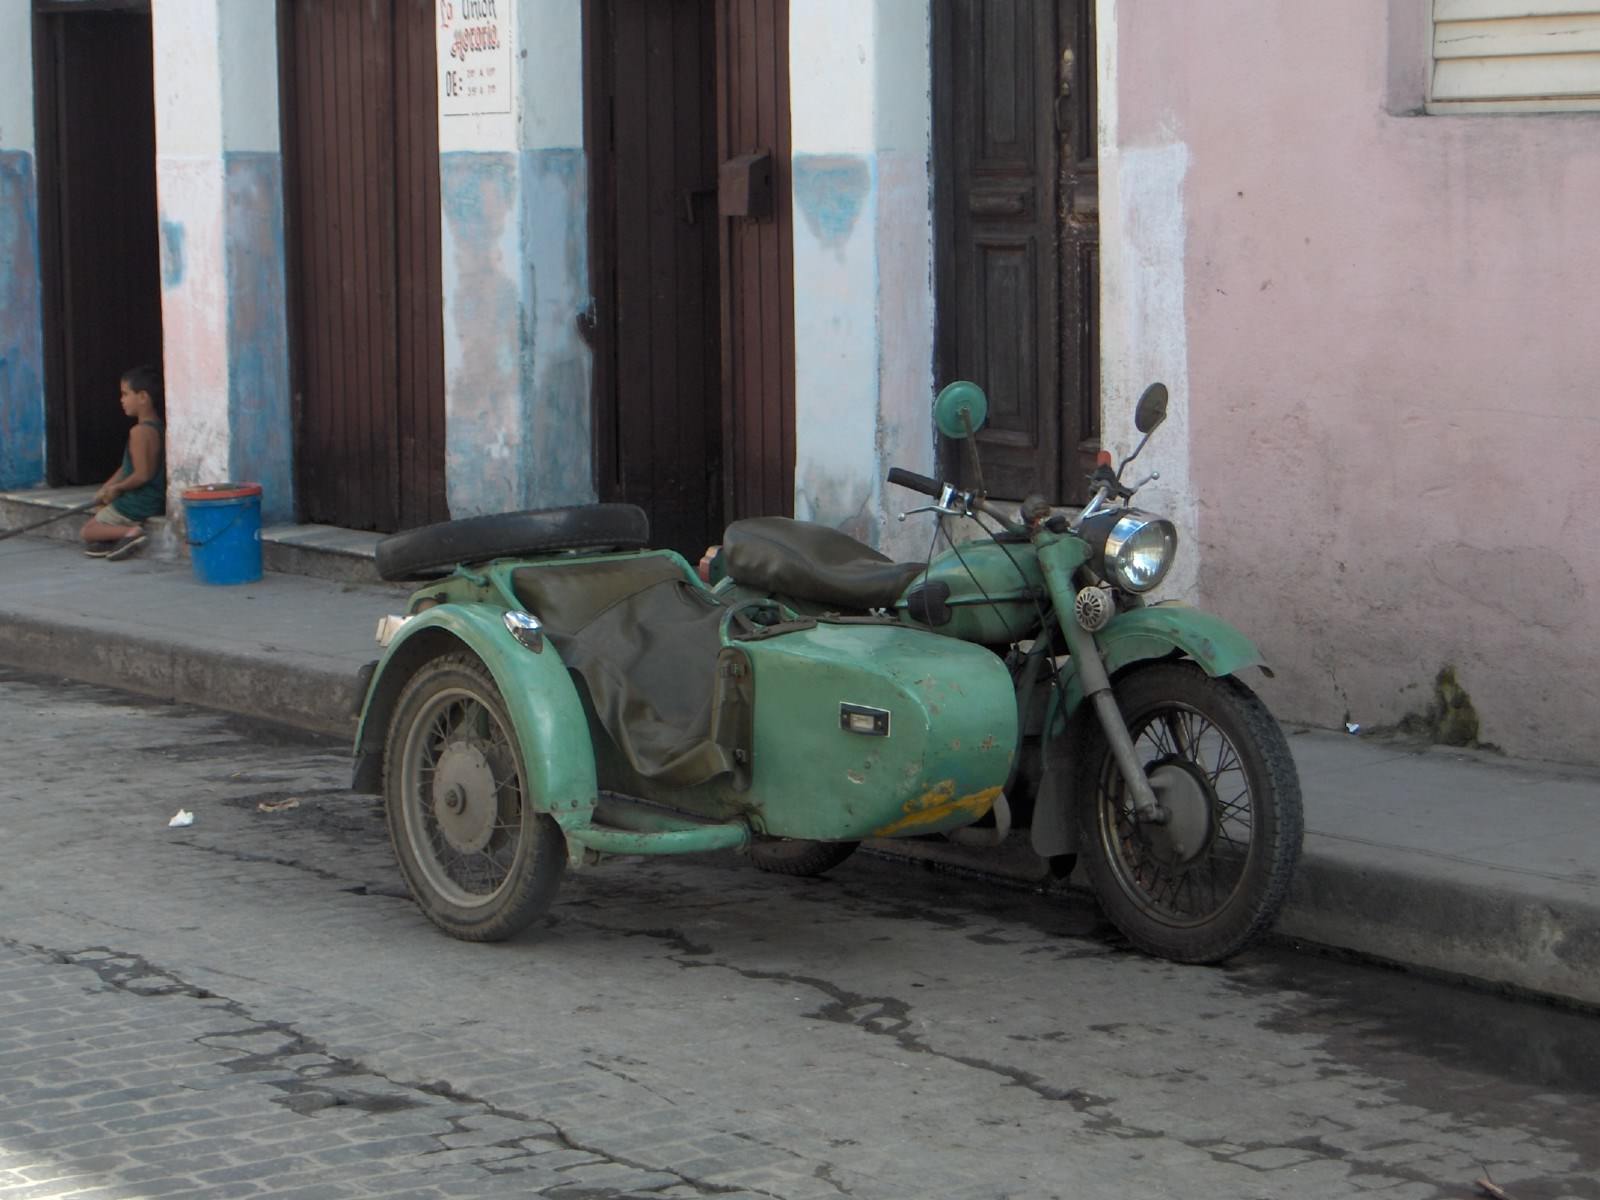 Cuba Santa Clara, pour faire un tour en ville ...